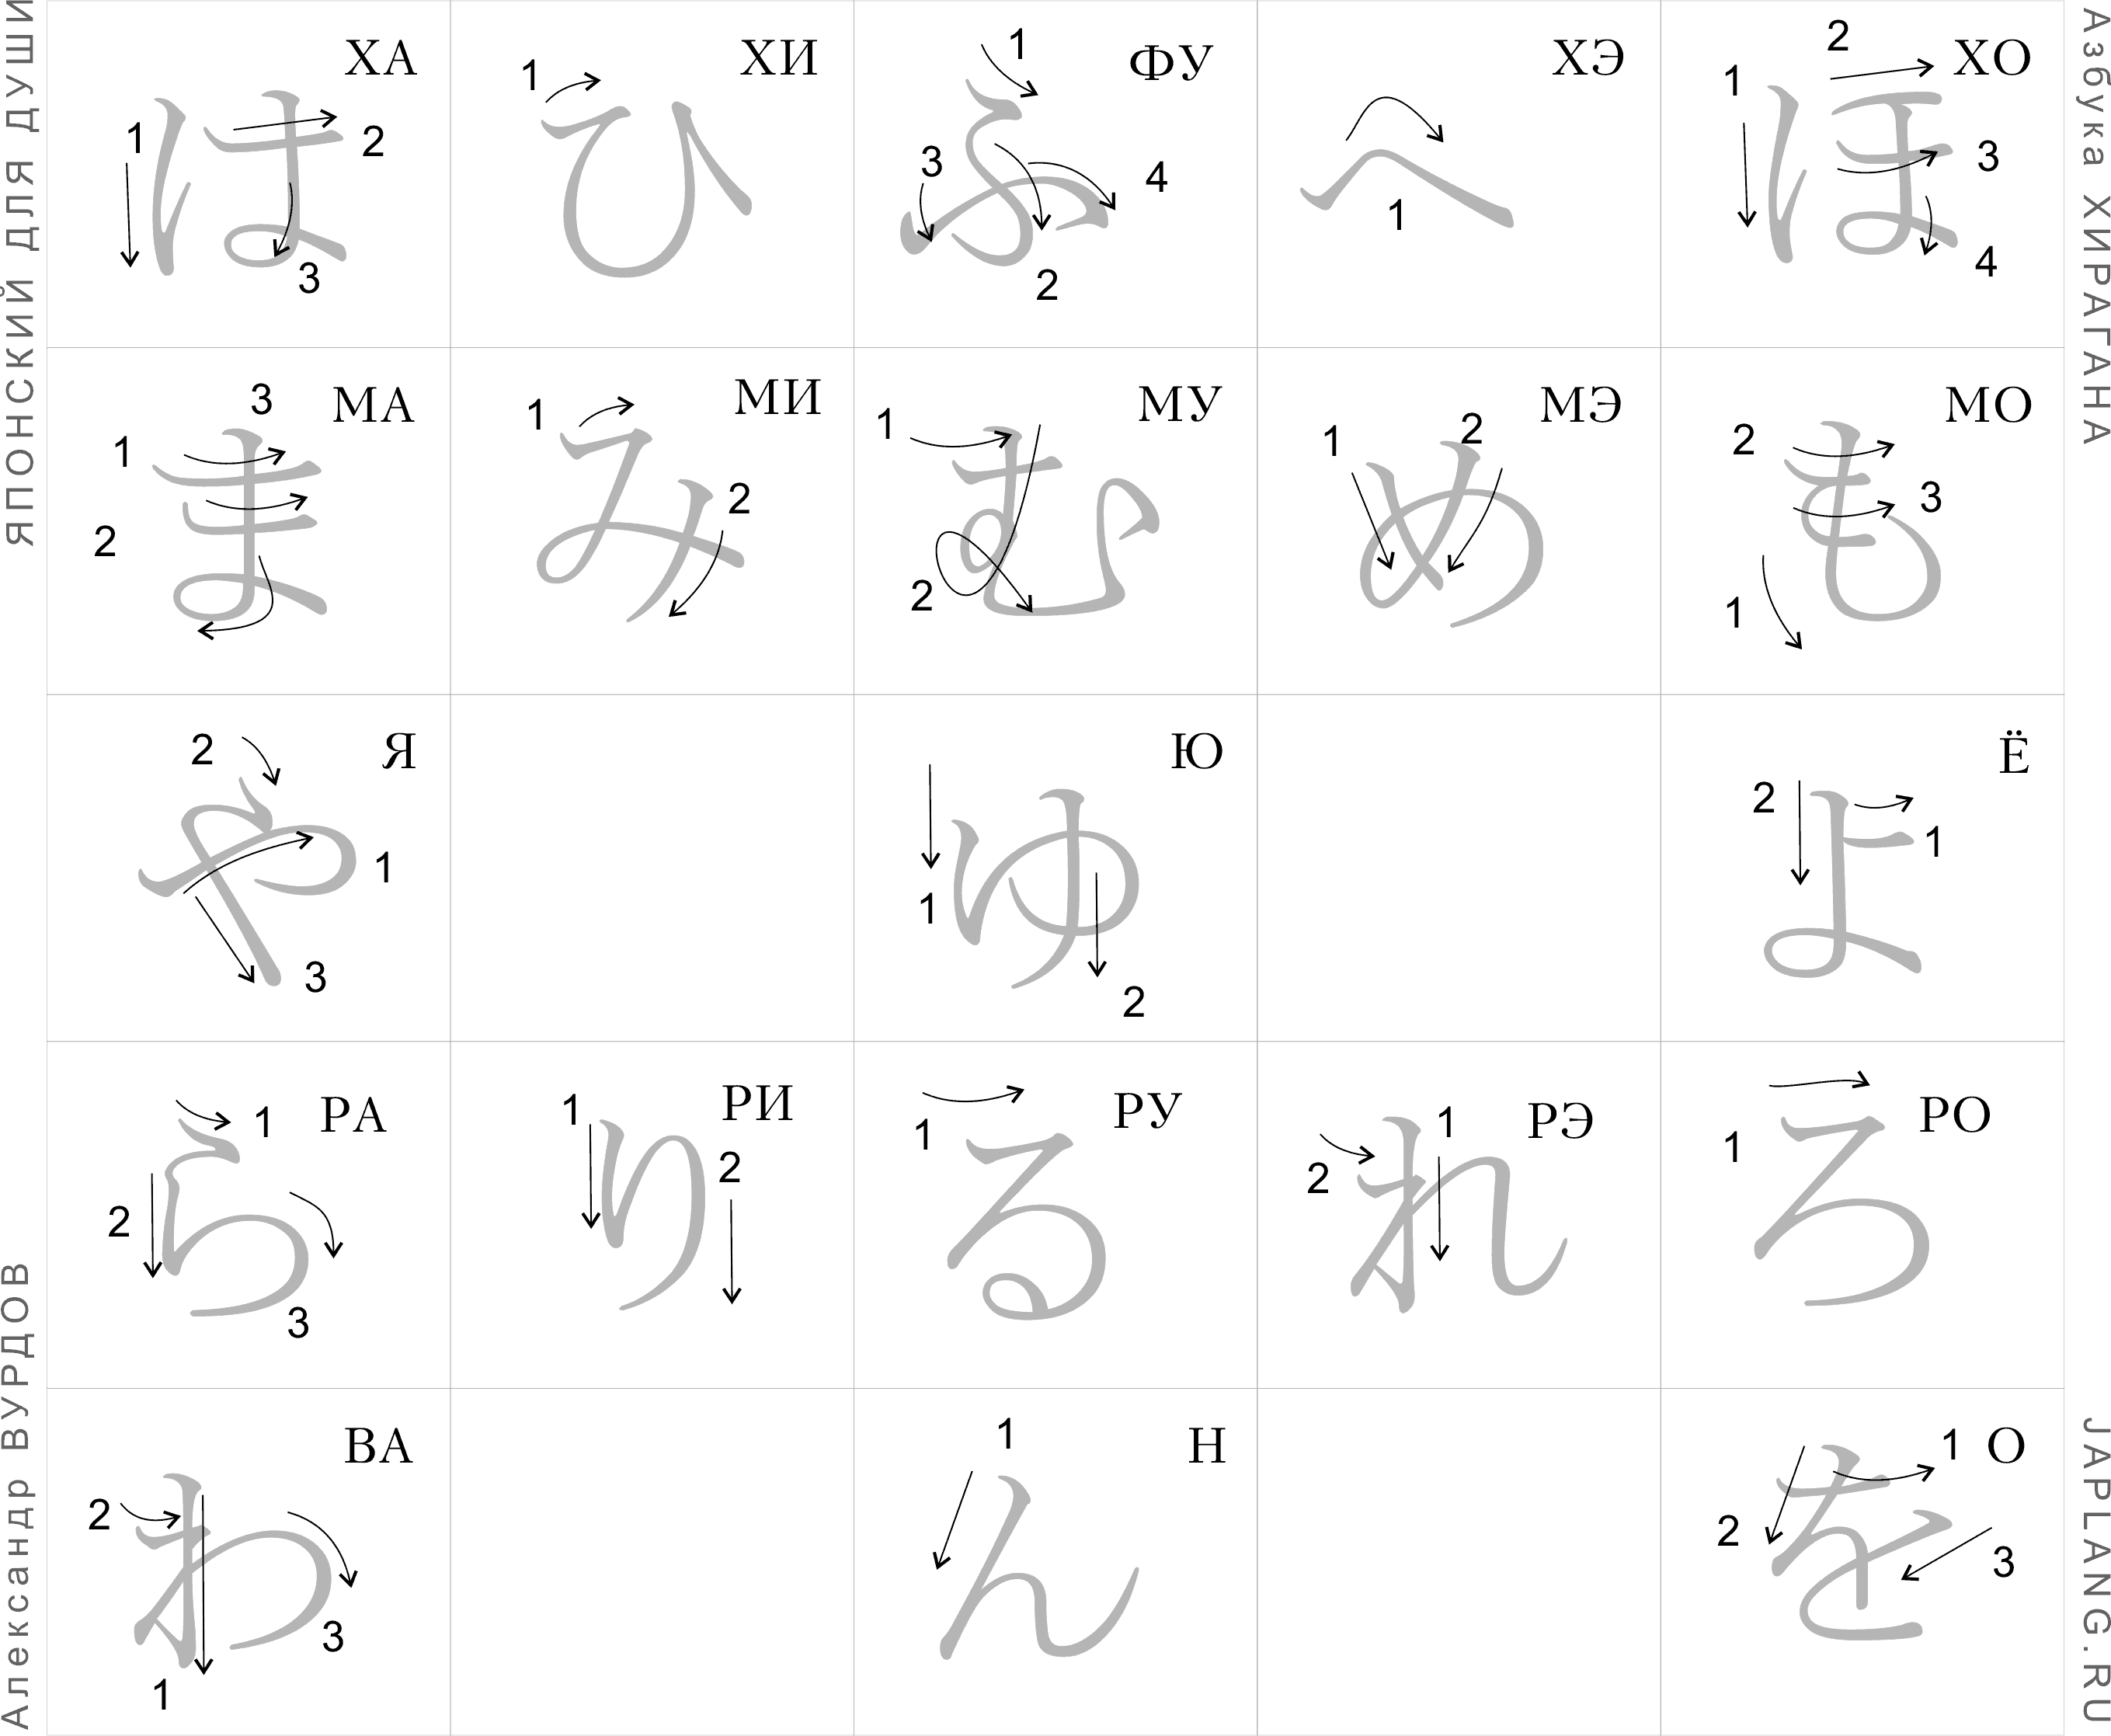 Konnichiwa in hiragana